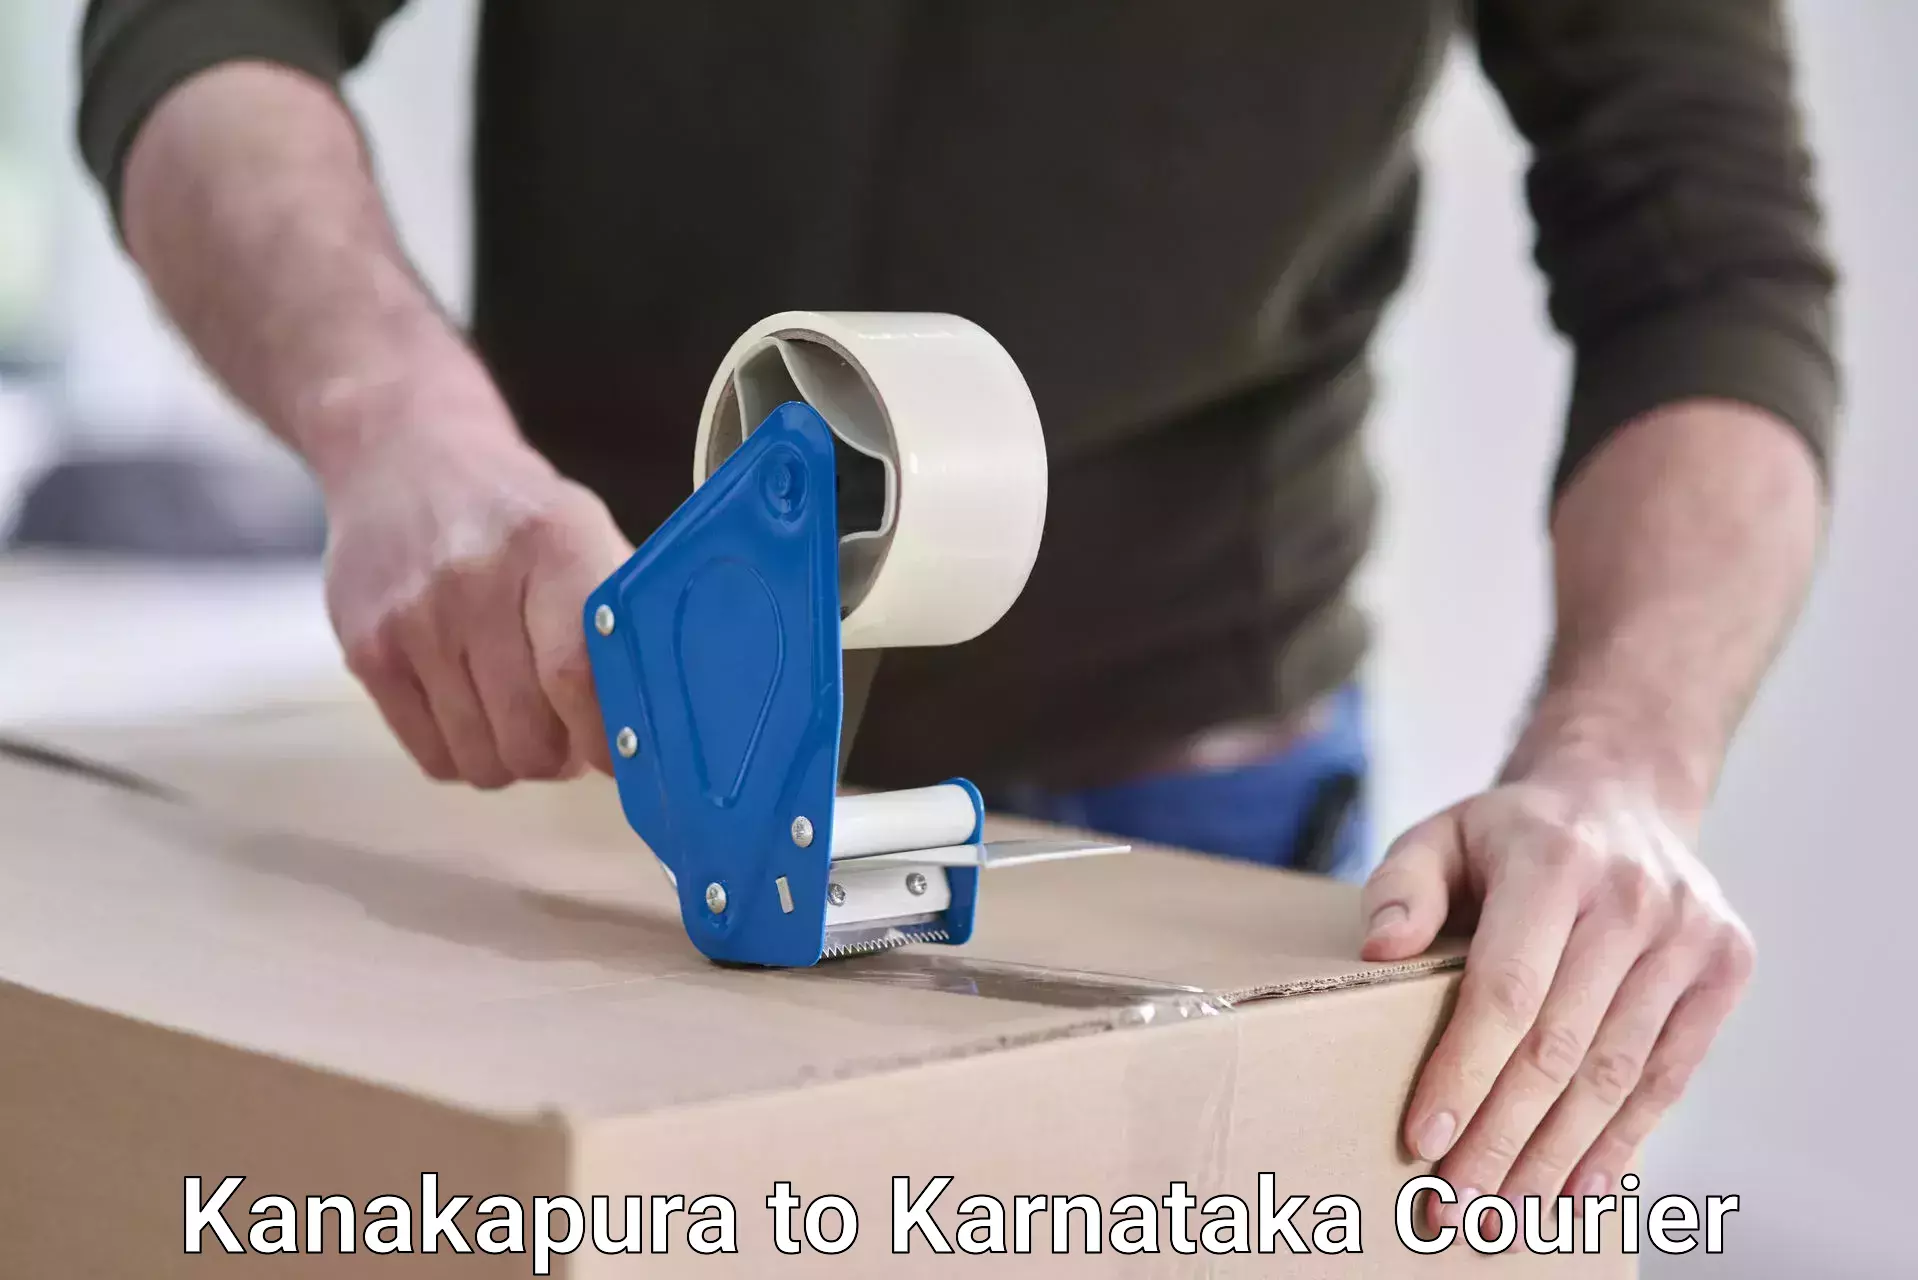 Express courier facilities Kanakapura to Uttara Kannada